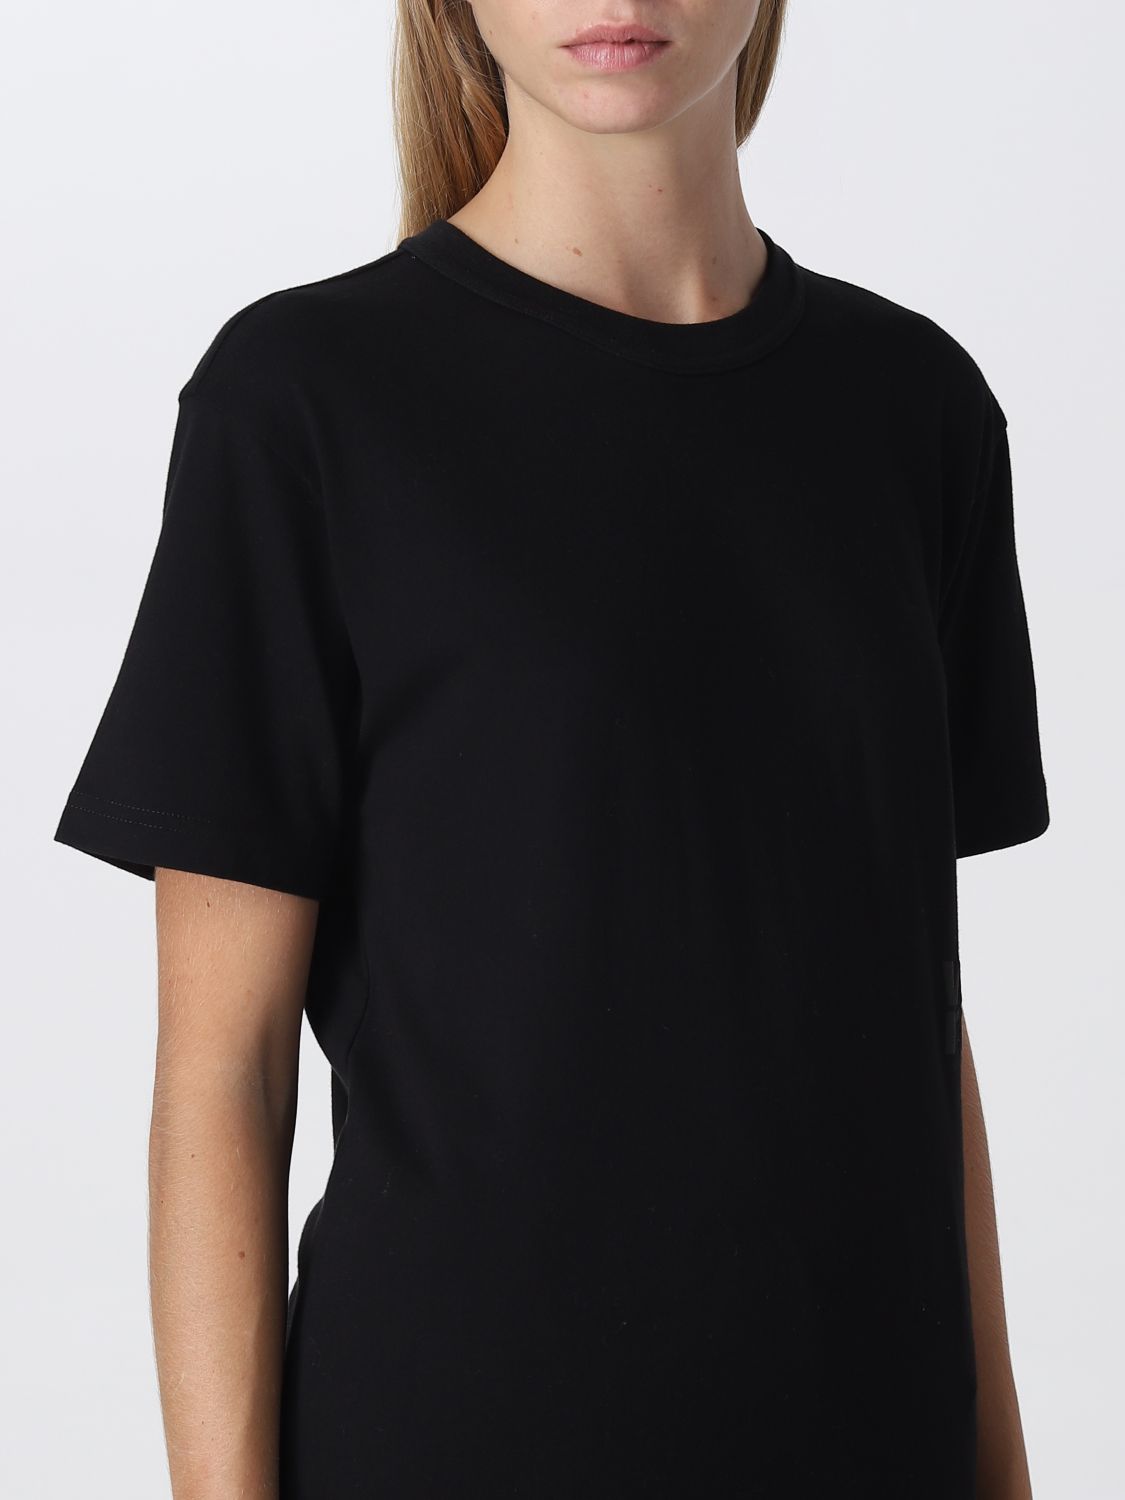 ALEXANDER WANG: t-shirt for woman - Black | Alexander Wang t-shirt ...